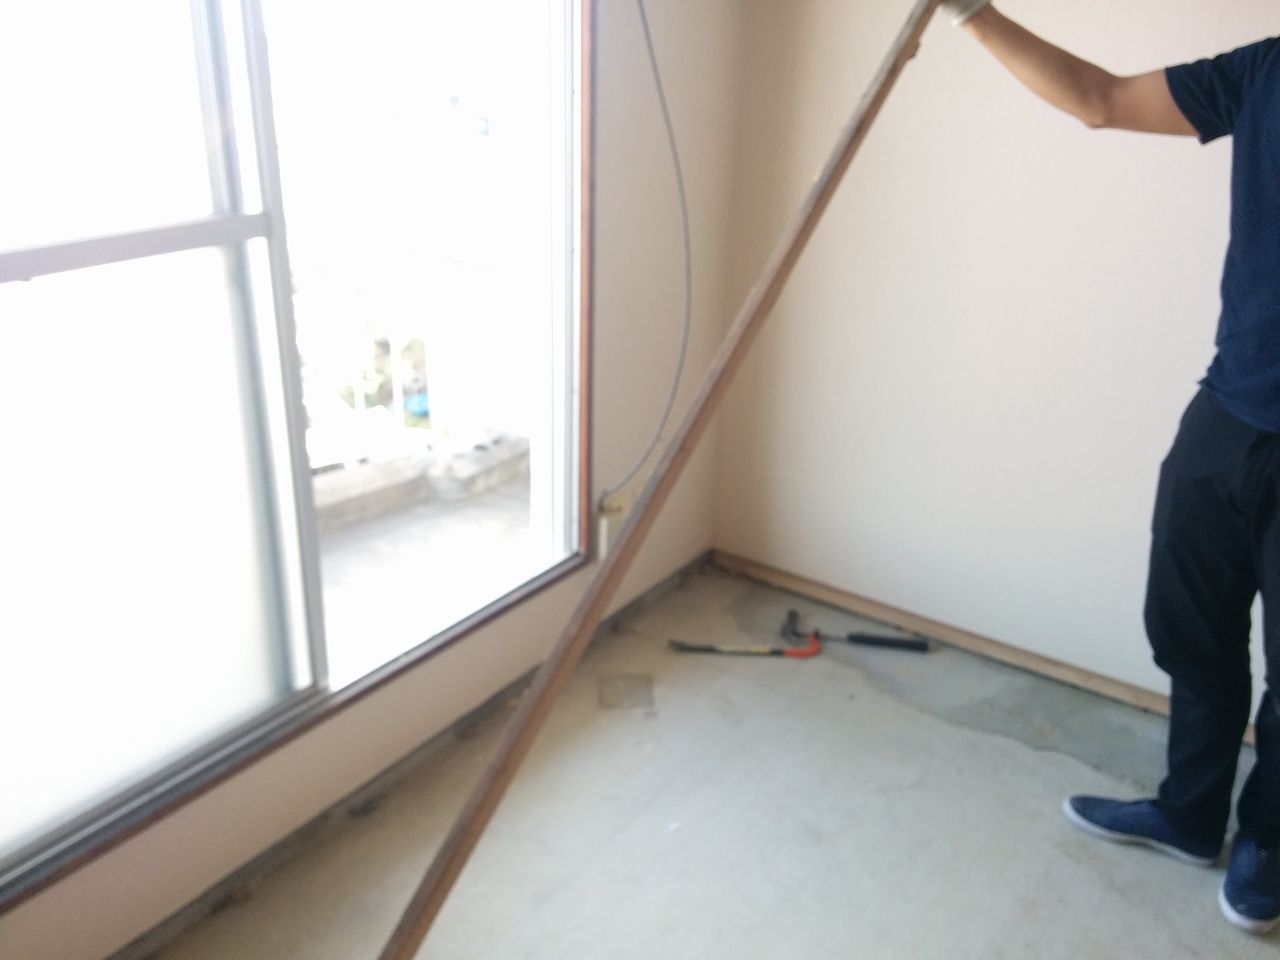 畳寄せとは、壁と畳の間に生じる隙間をふさぐための部材です。
これをバールを使って解体します。